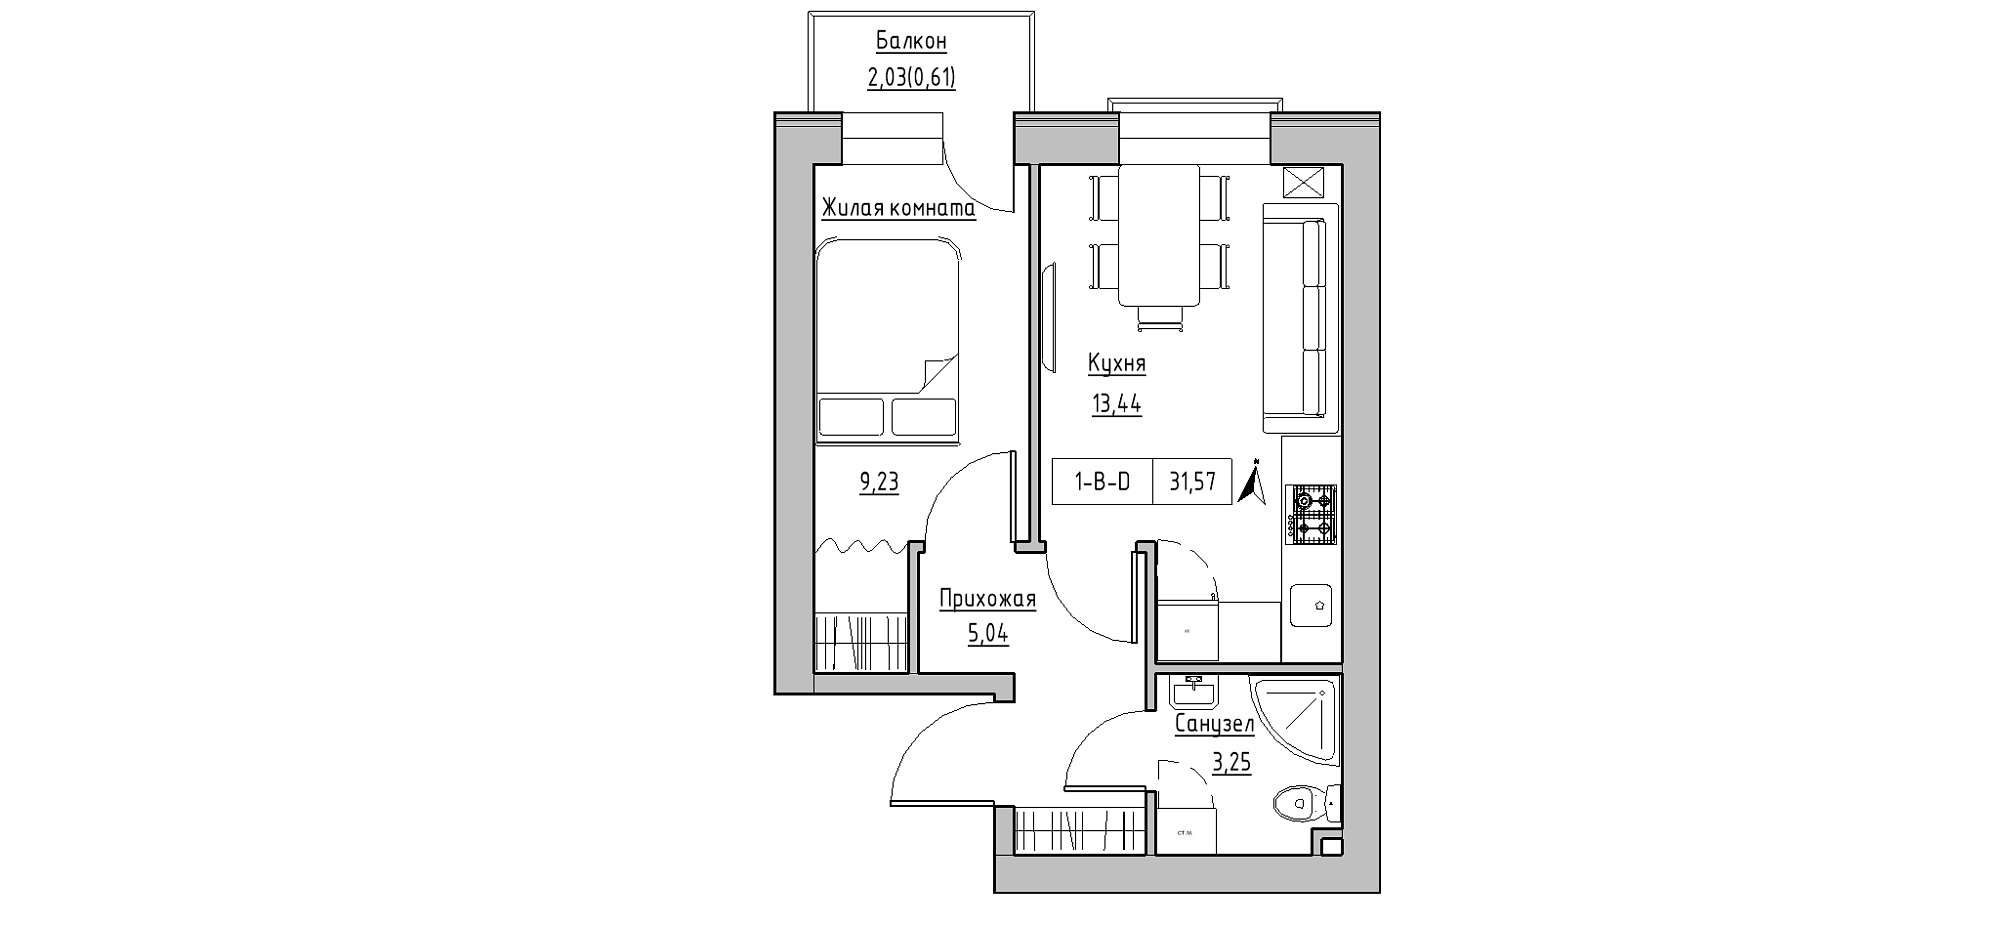 Планировка 1-к квартира площей 31.57м2, KS-020-05/0003.